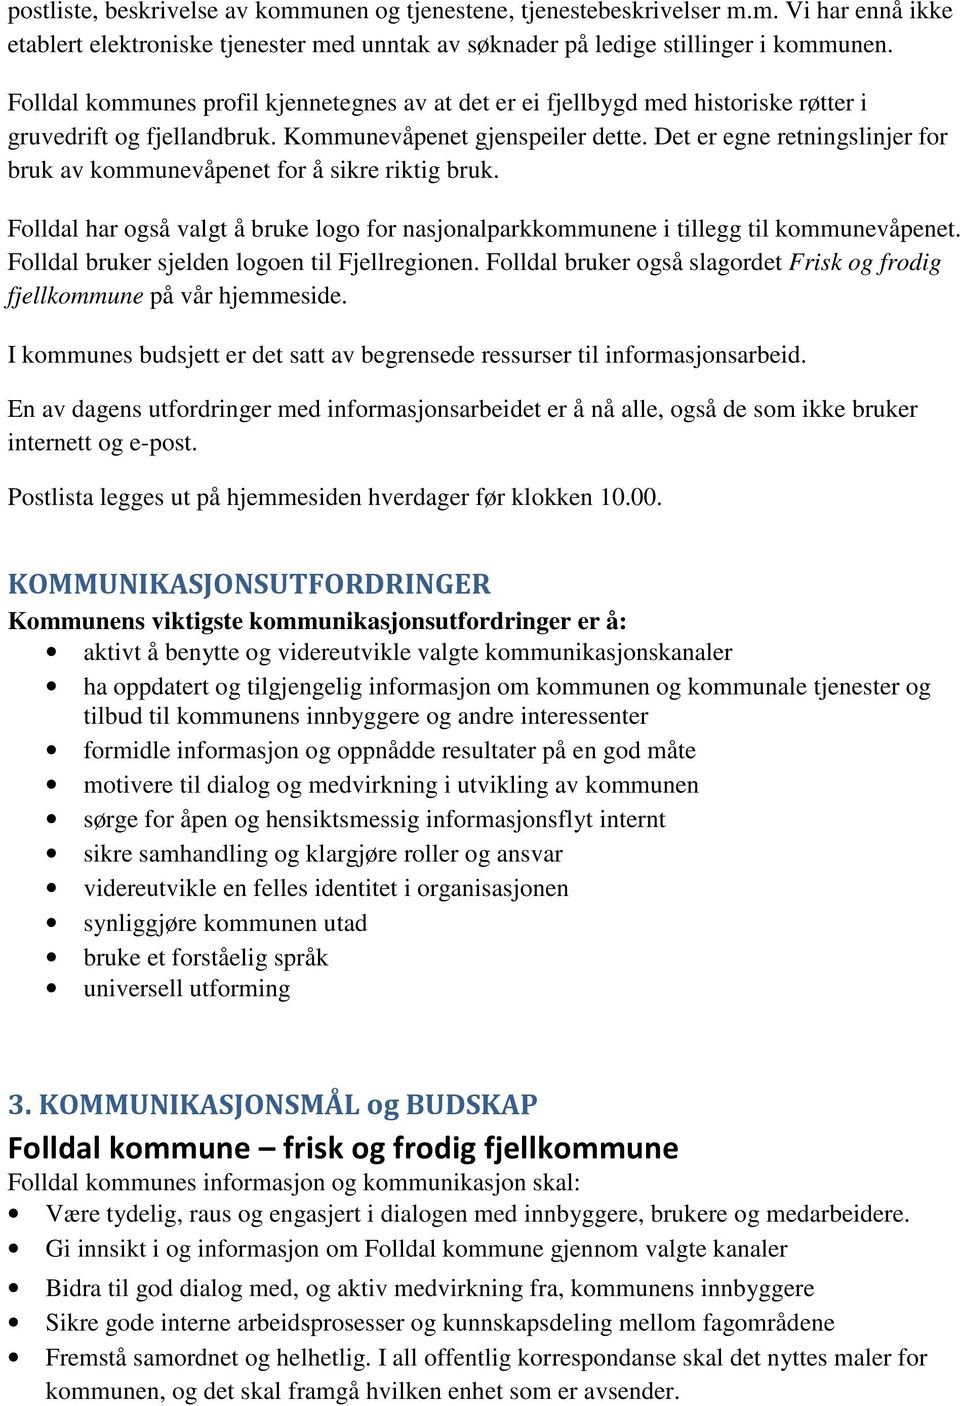 Det er egne retningslinjer for bruk av kommunevåpenet for å sikre riktig bruk. Folldal har også valgt å bruke logo for nasjonalparkkommunene i tillegg til kommunevåpenet.